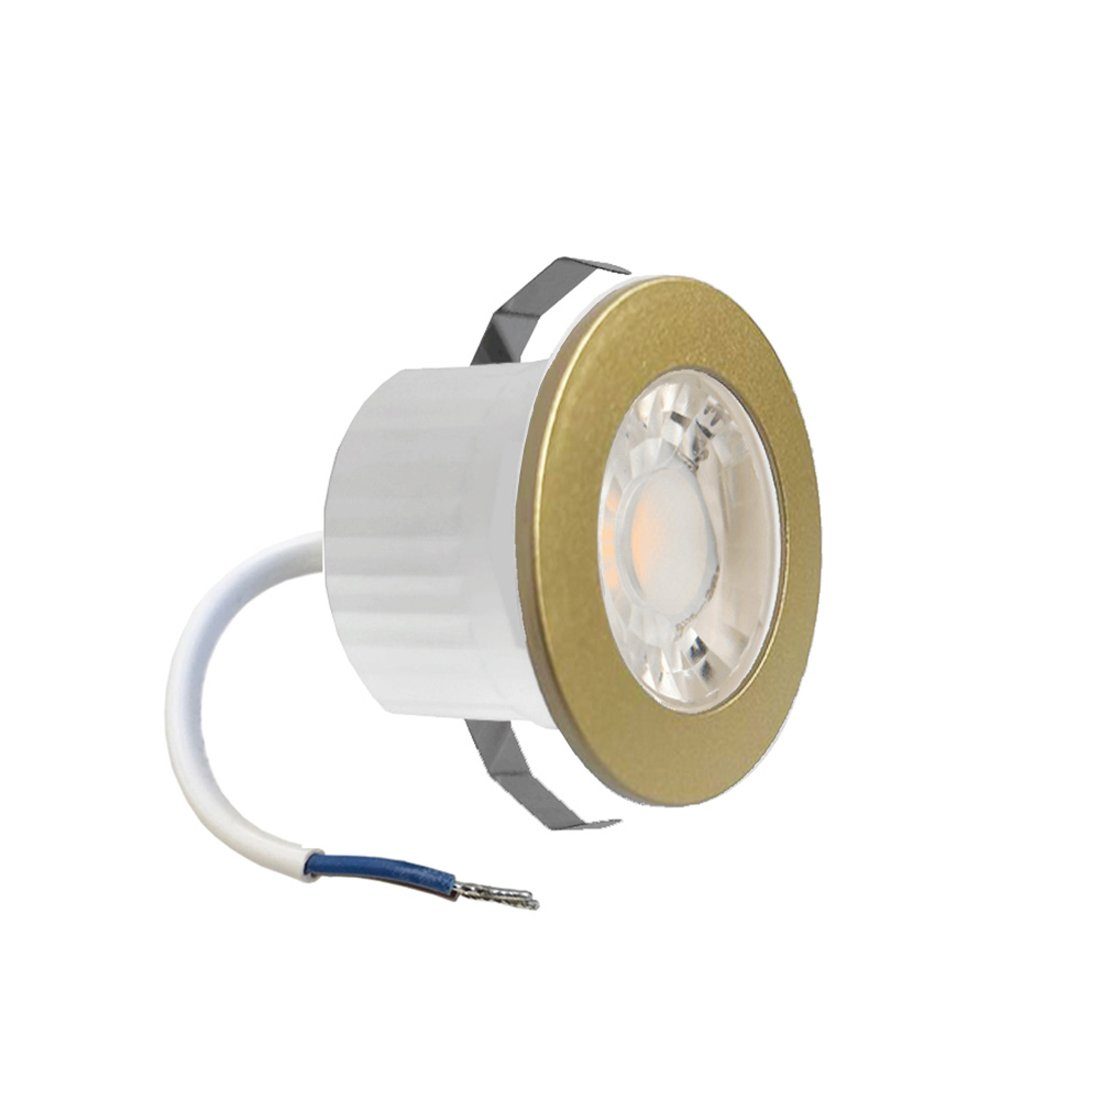 Braytron LED Einbaustrahler 3 Watt LED mini Einbauleuchte Einbaustrahler Spot Gold Kaltweiß Schutz, Mini Spot Rahmenfarbe Gold für innen und außen IP54 kaltweiß